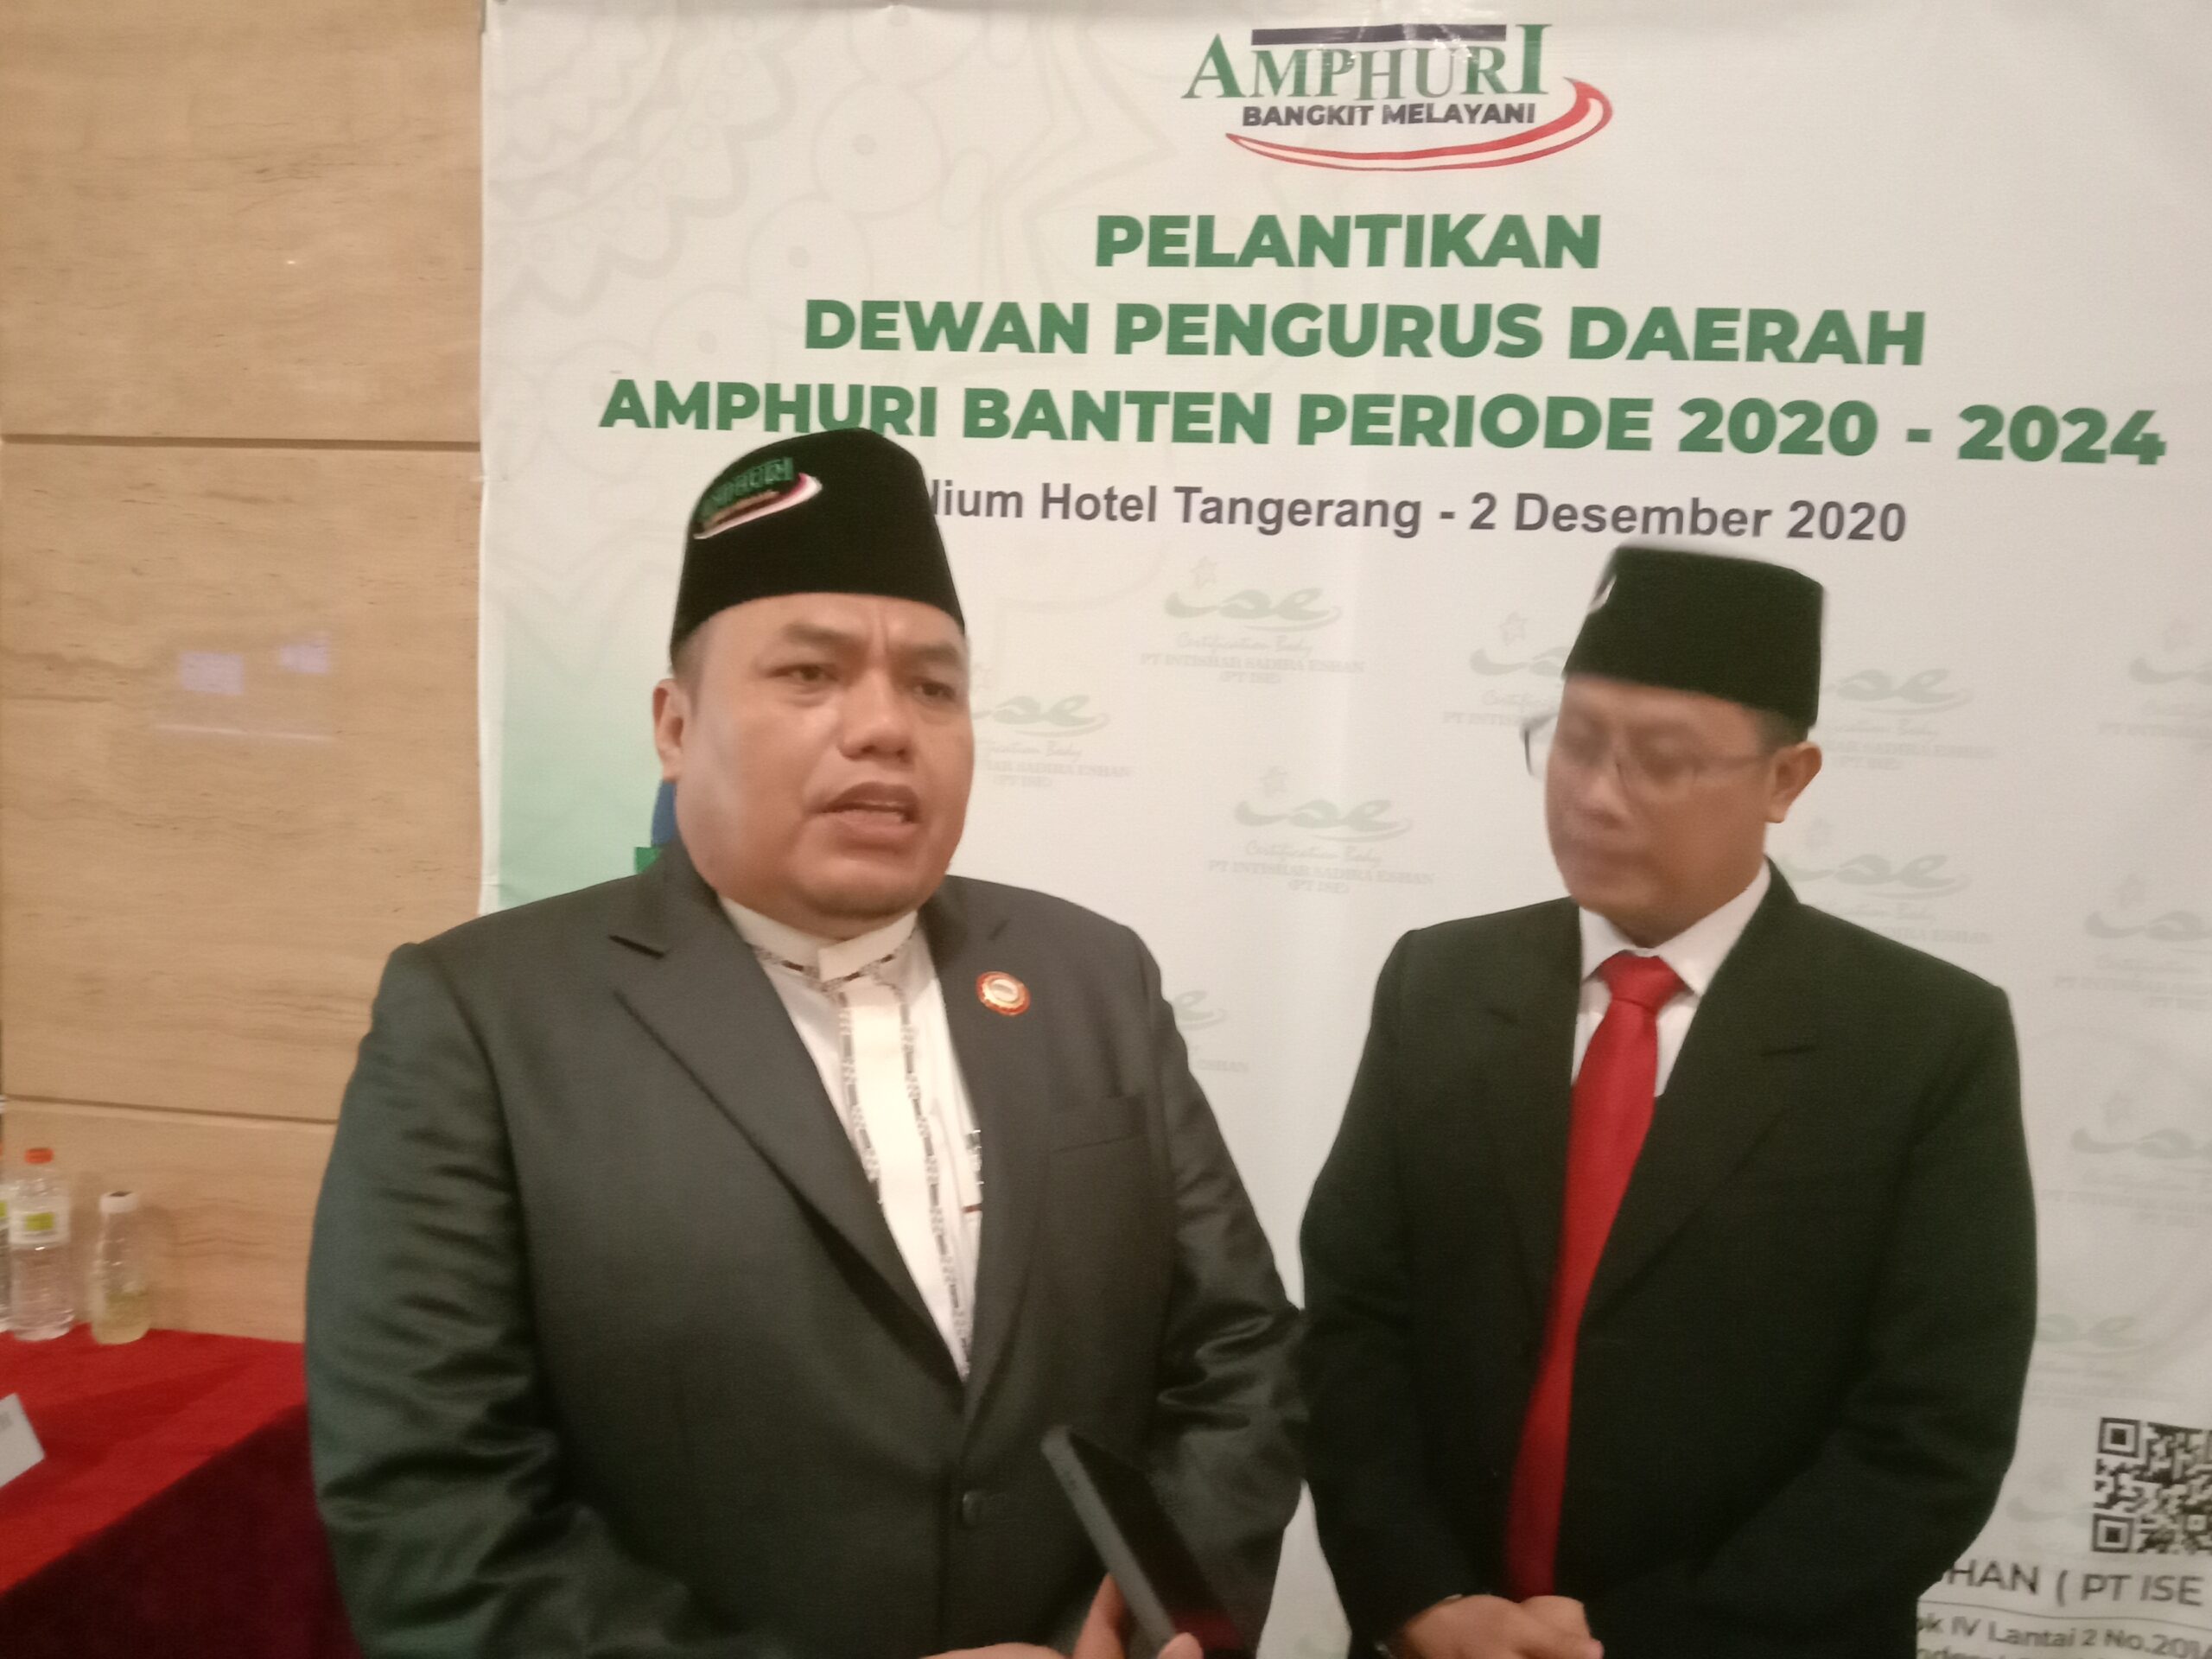 DPD AMPHURI Banten Dilantik, Seribu Jamaah Umroh Diprioritaskan Berangkat di 2021